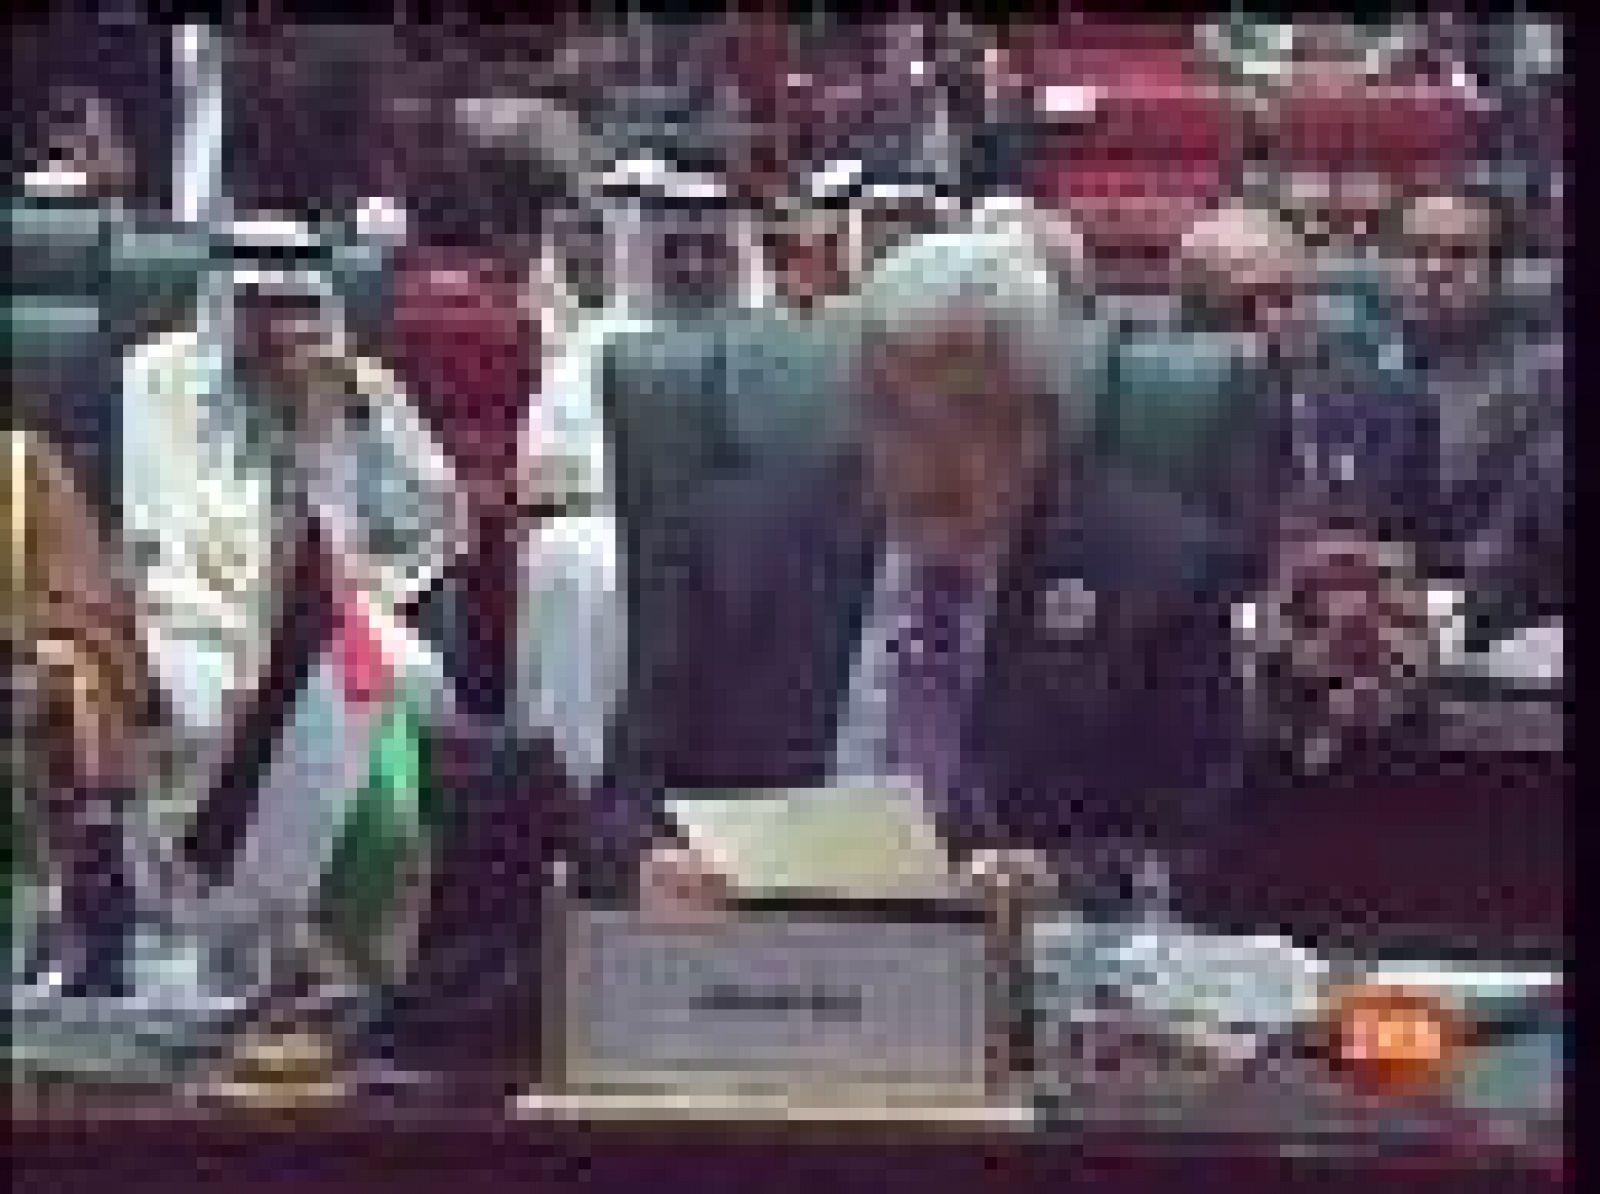  La Liga Árabe, reunida en la ciudad libia de Sirte se ha mostrado opuesta a que pueda haber negociaciones indirectas de paz con Israel mientras el Gobierno de Benjamin Netanyahu mantenga los planes para establecer nuevos asentamientos judios sobre territroio palestino.